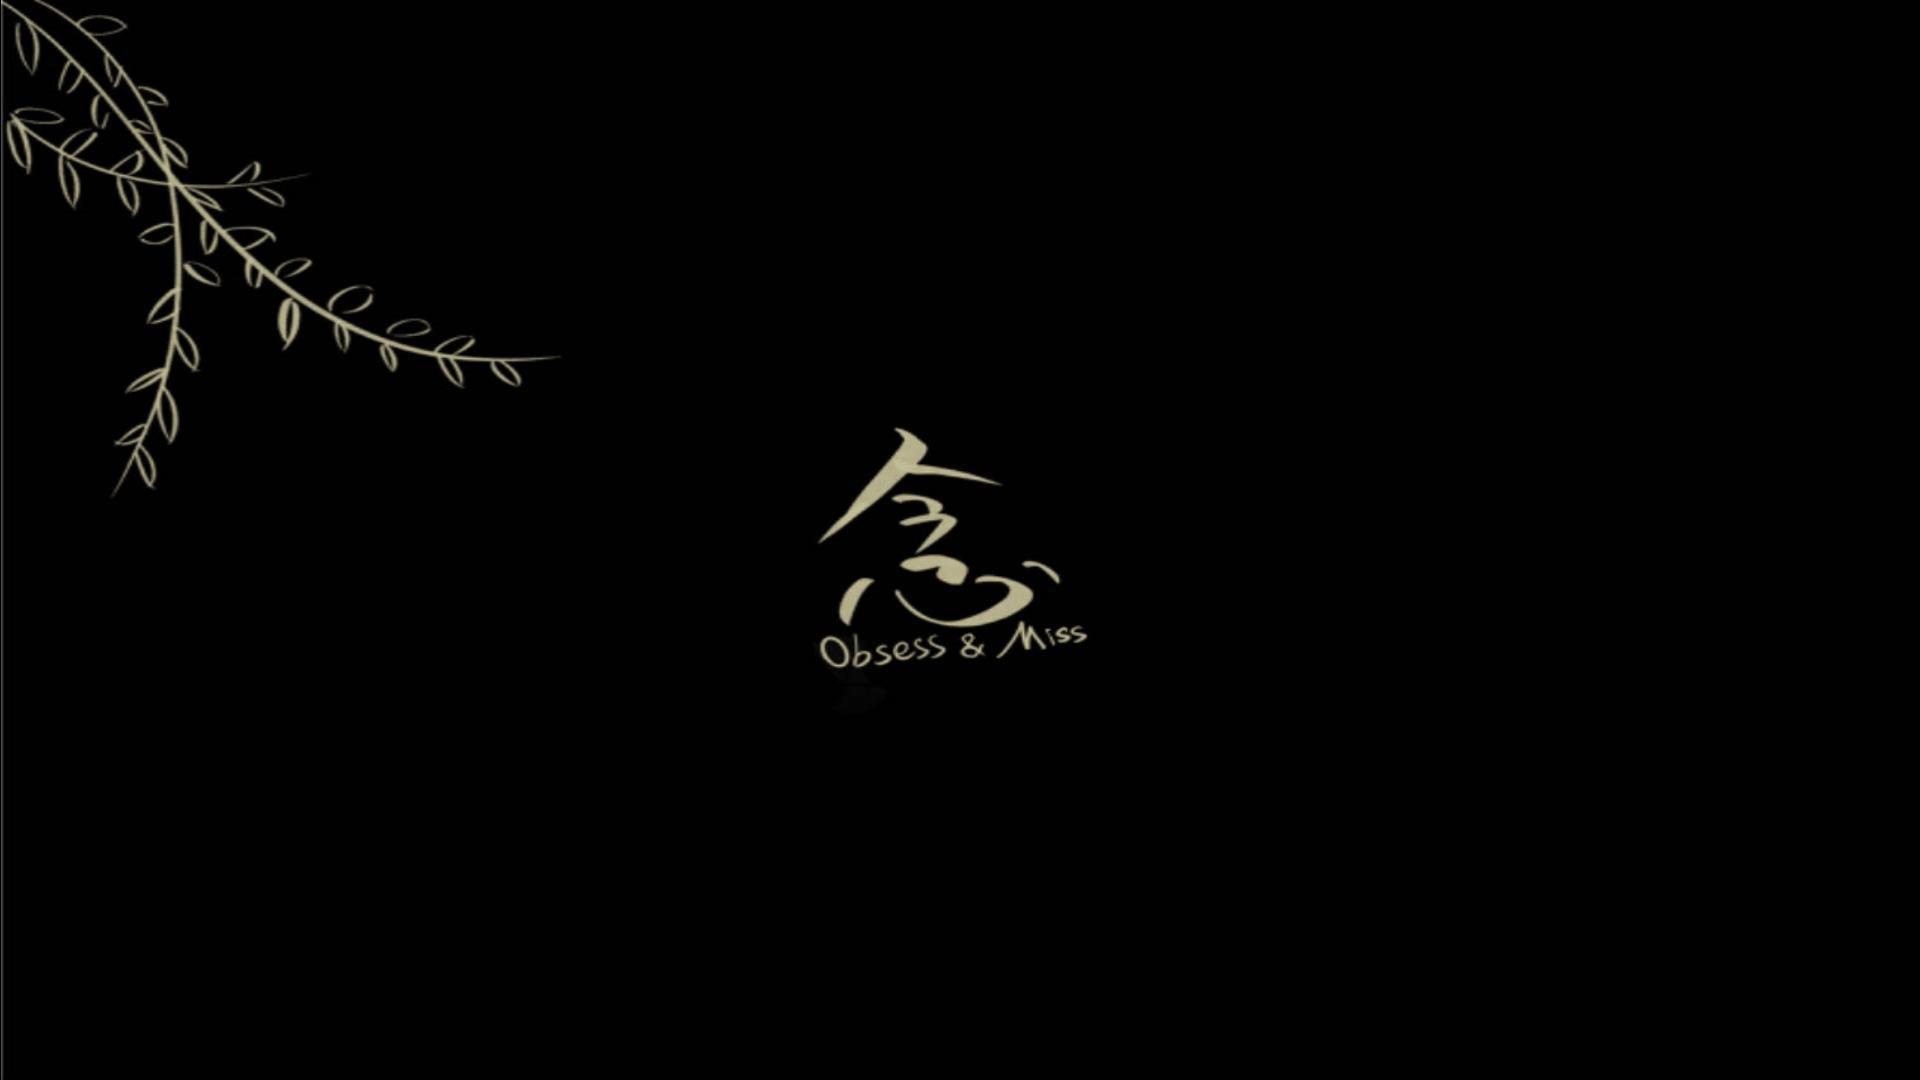 JunLong Chen | Animation